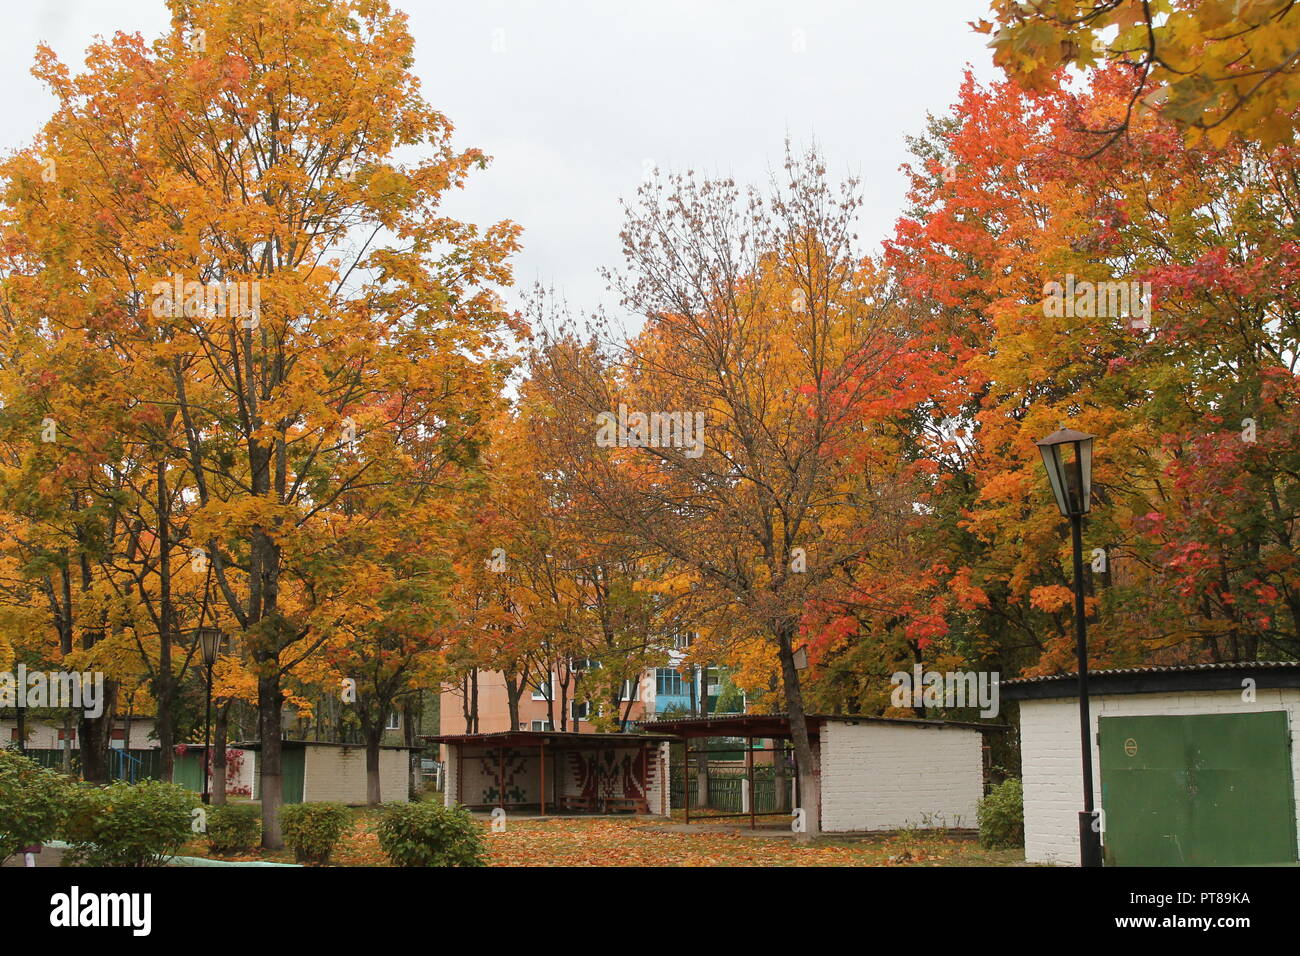 Sehr schönes, helles Gelb und Orange, Rot Laub auf Bäume im Stadtpark und Straßen Stockfoto